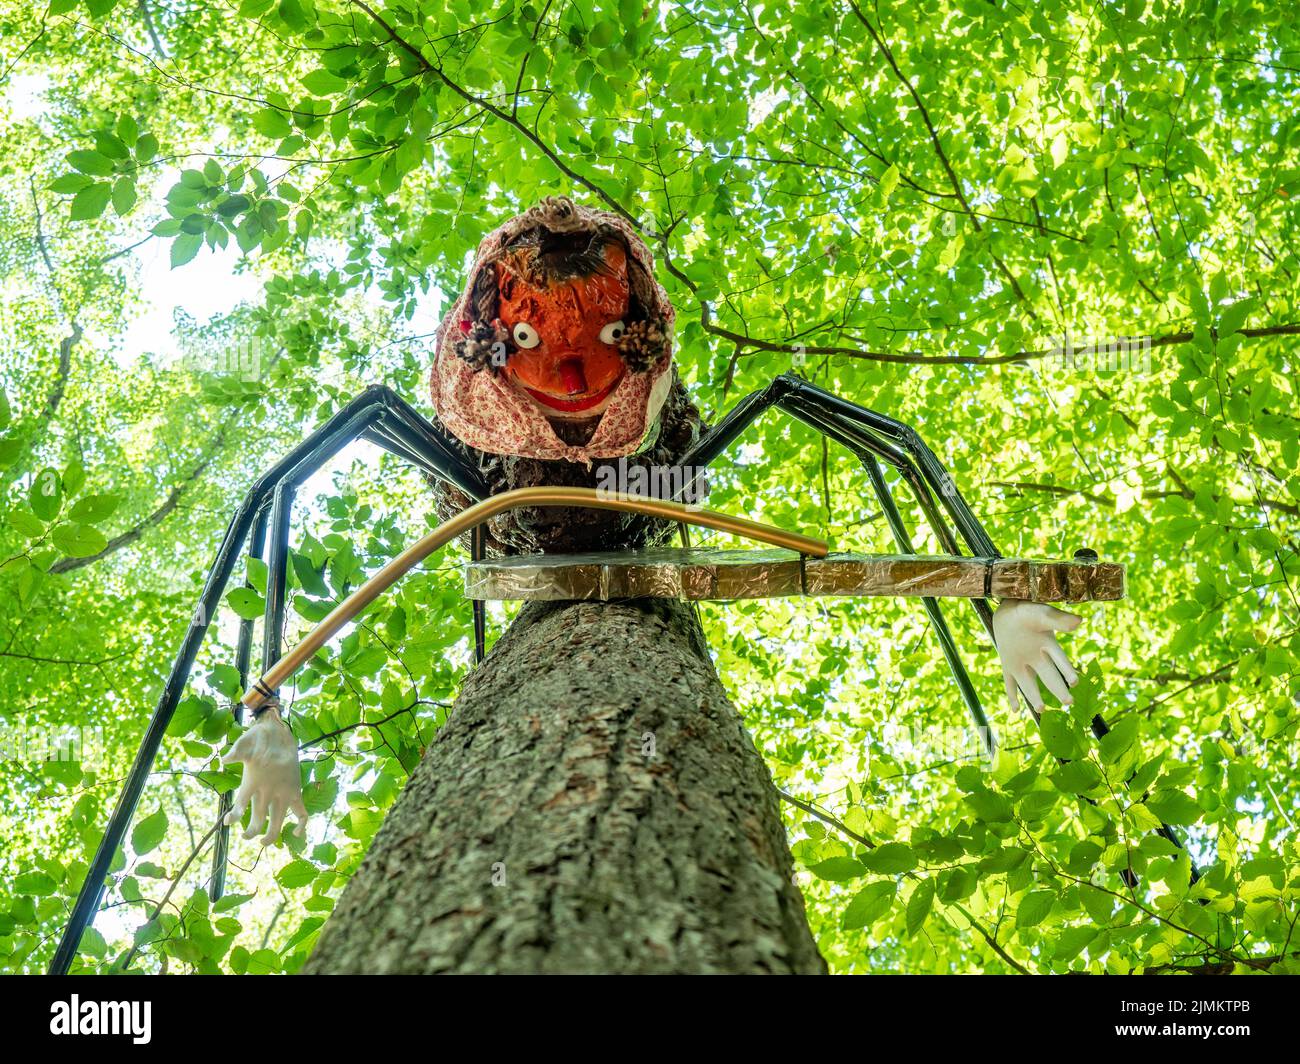 Juguete o estatua de una araña dama con un violín entre sus ocho patas. Lazo de cuerda Hágalo Gossamer telaraña en el árbol en el parque de juegos de los niños Foto de stock